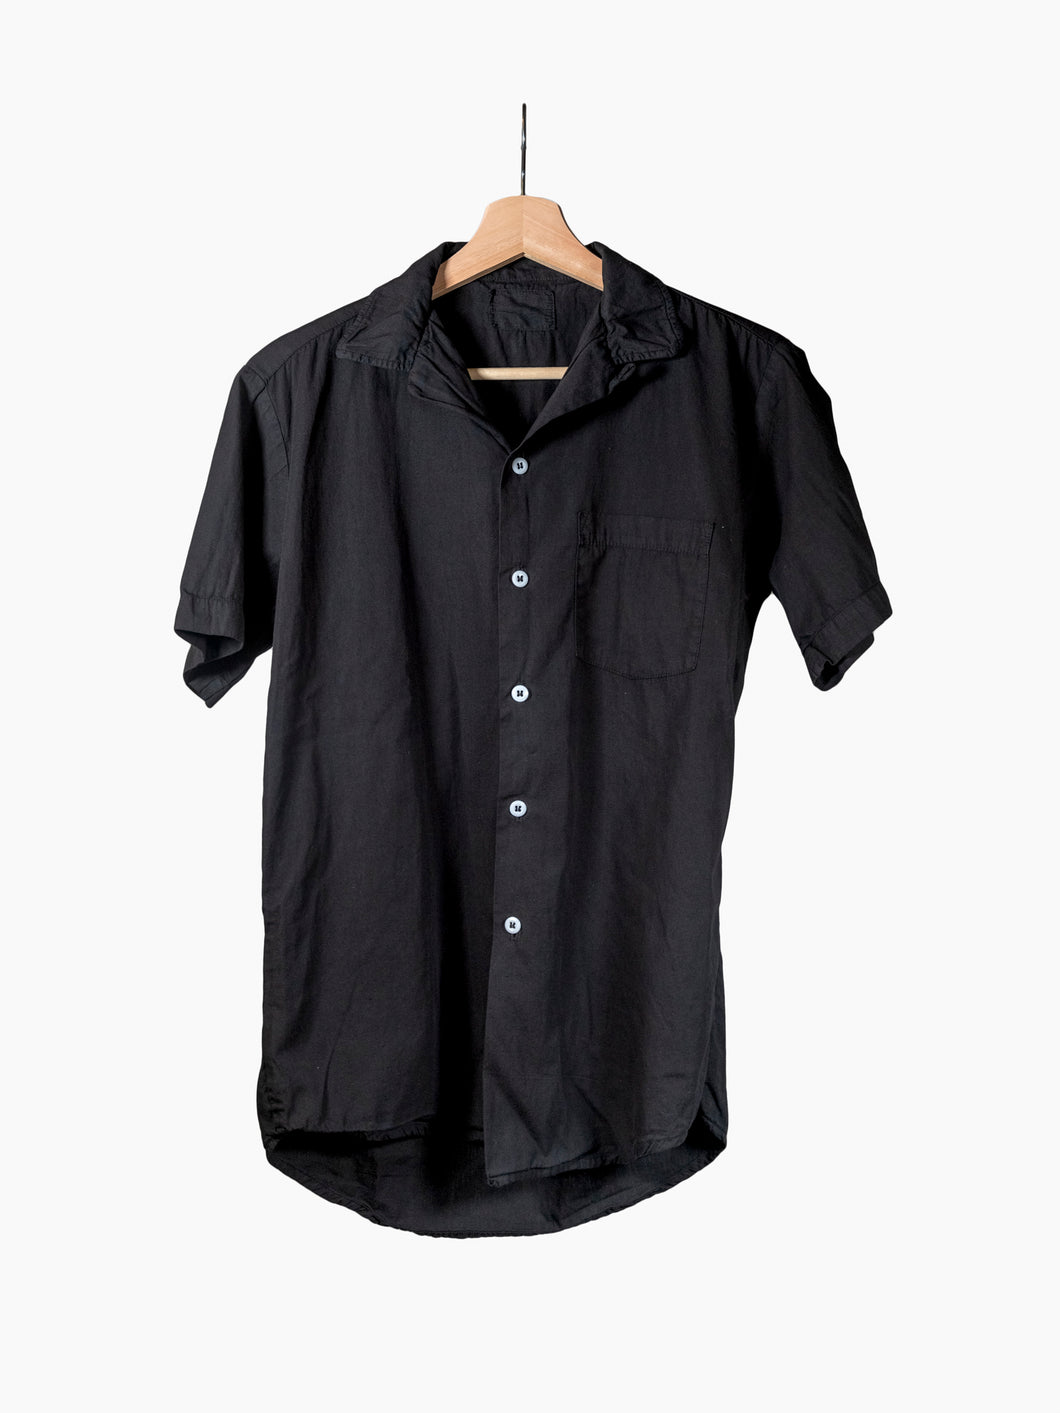 Vintage Black Short Sleeve Loop Collar Shirt